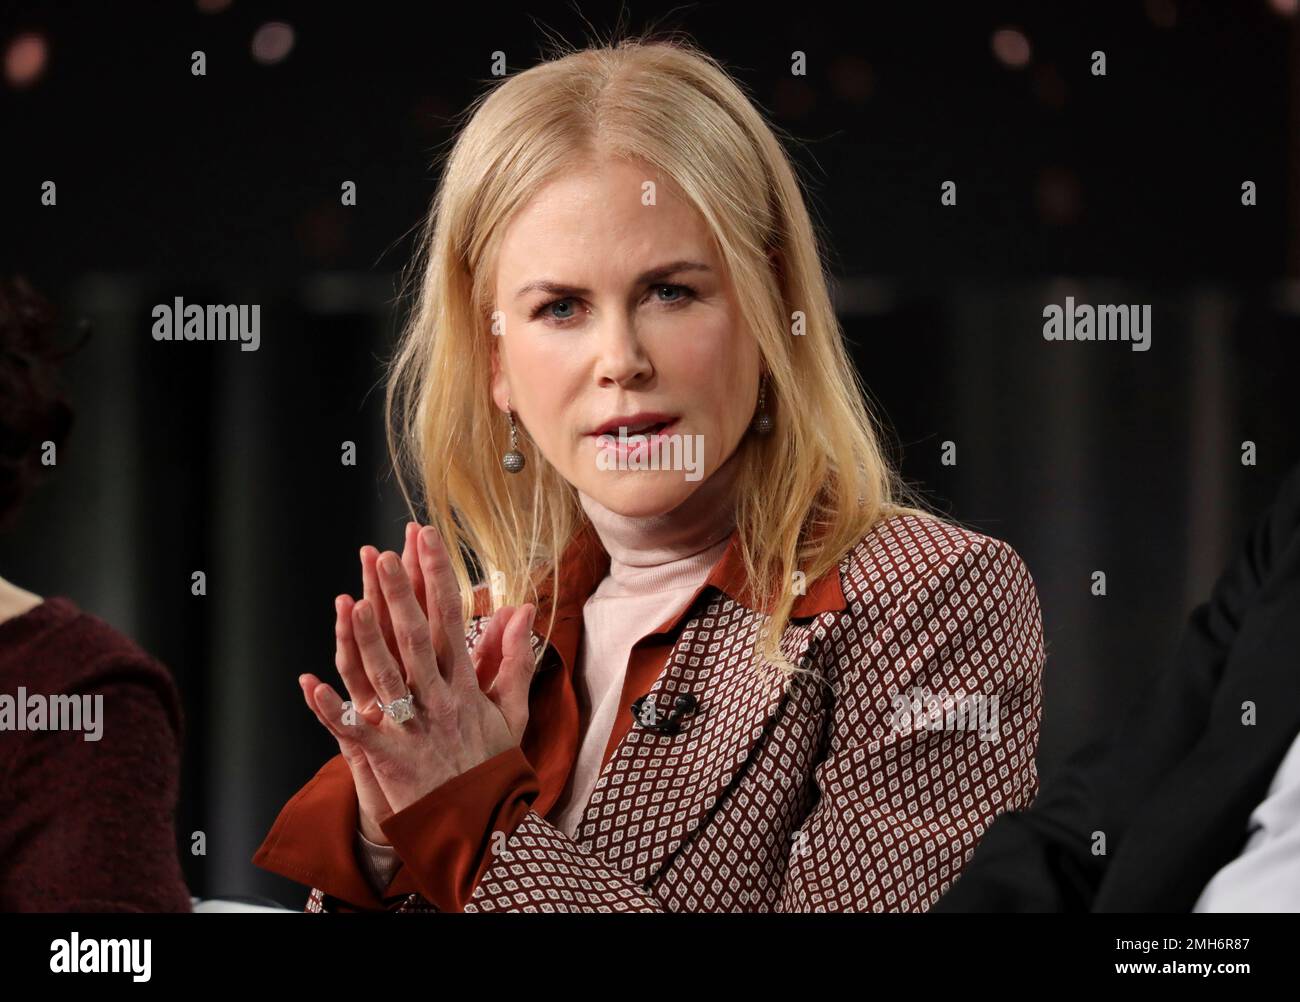 Nicole Kidman speaks at the